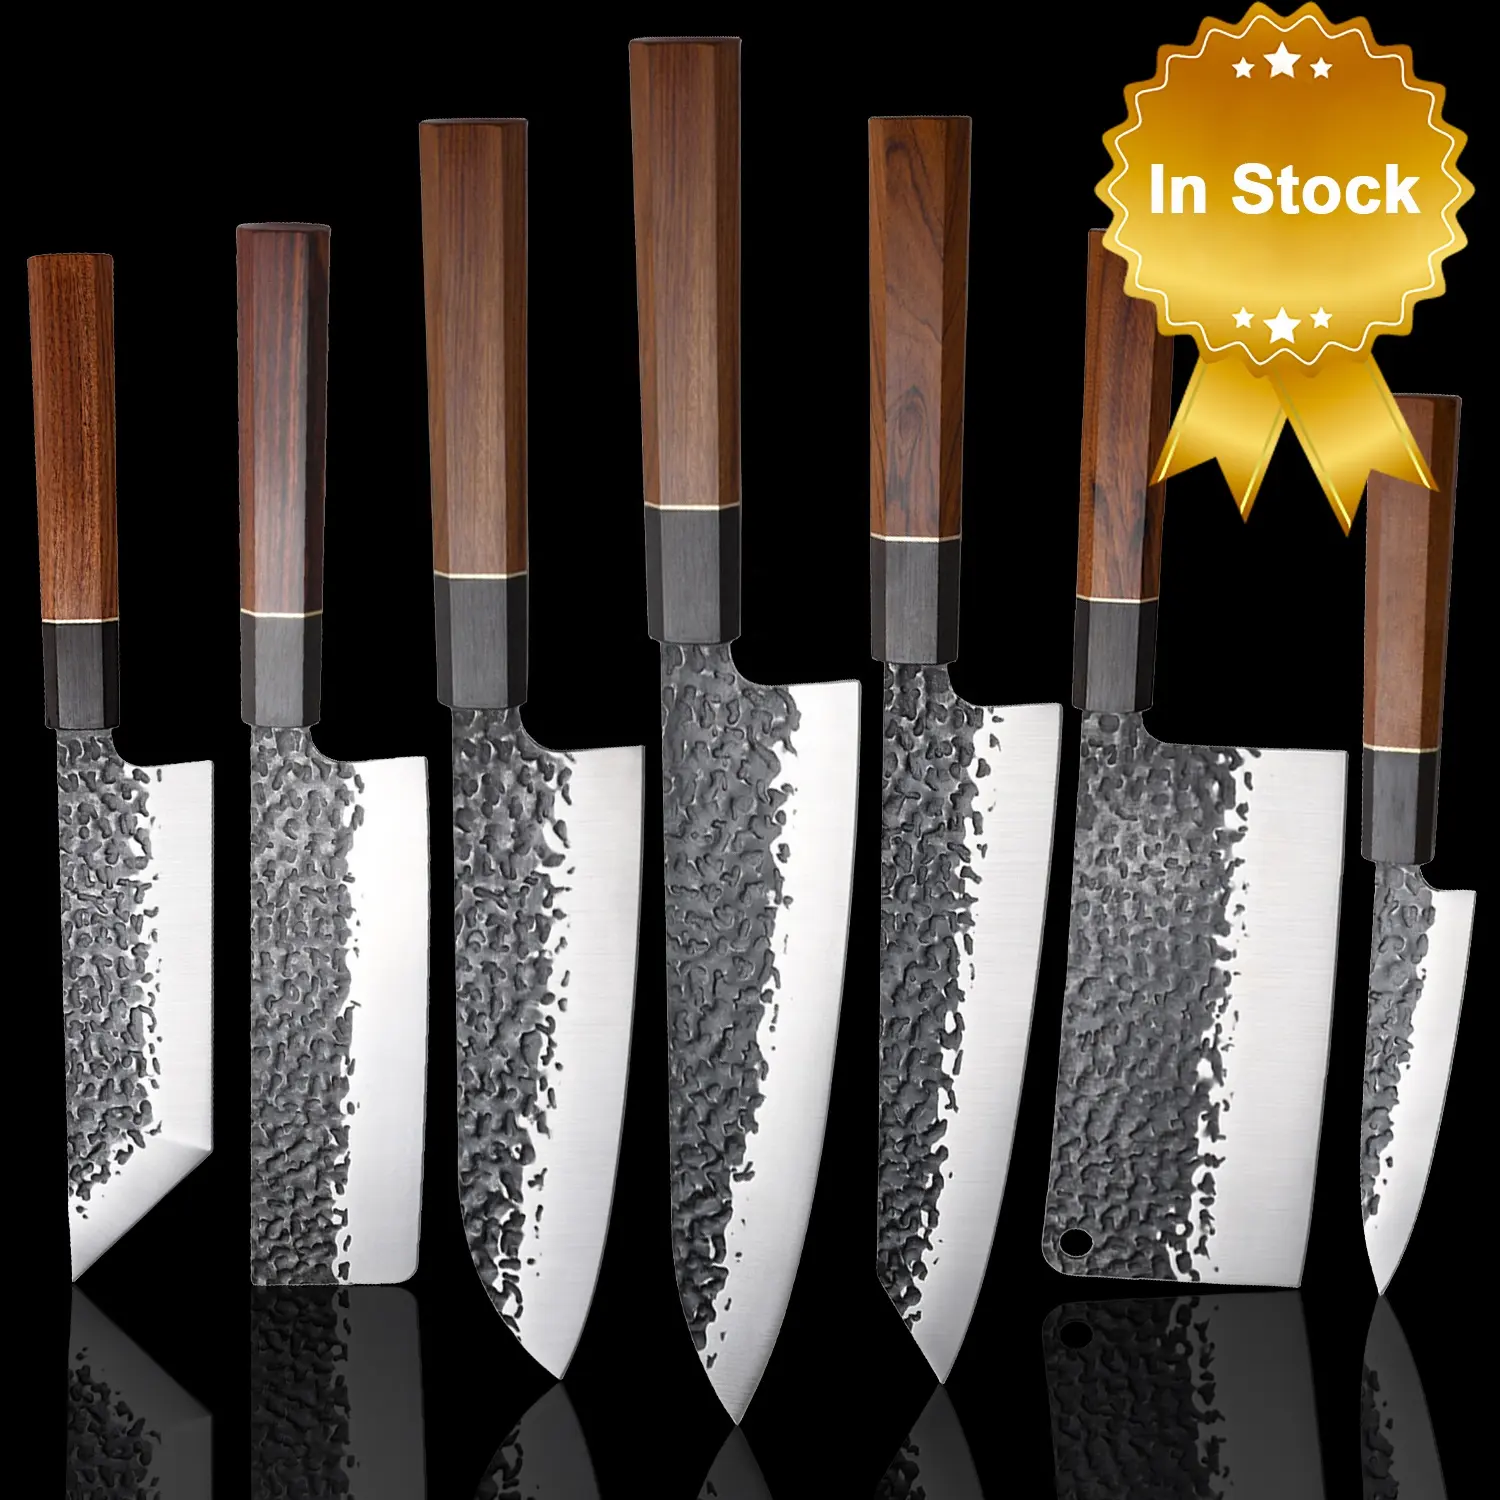 Çekiç dövme desen profesyonel mutfak bıçakları japon Kife Set sekizgen ahşap saplı mutfak şef bıçaklar seti